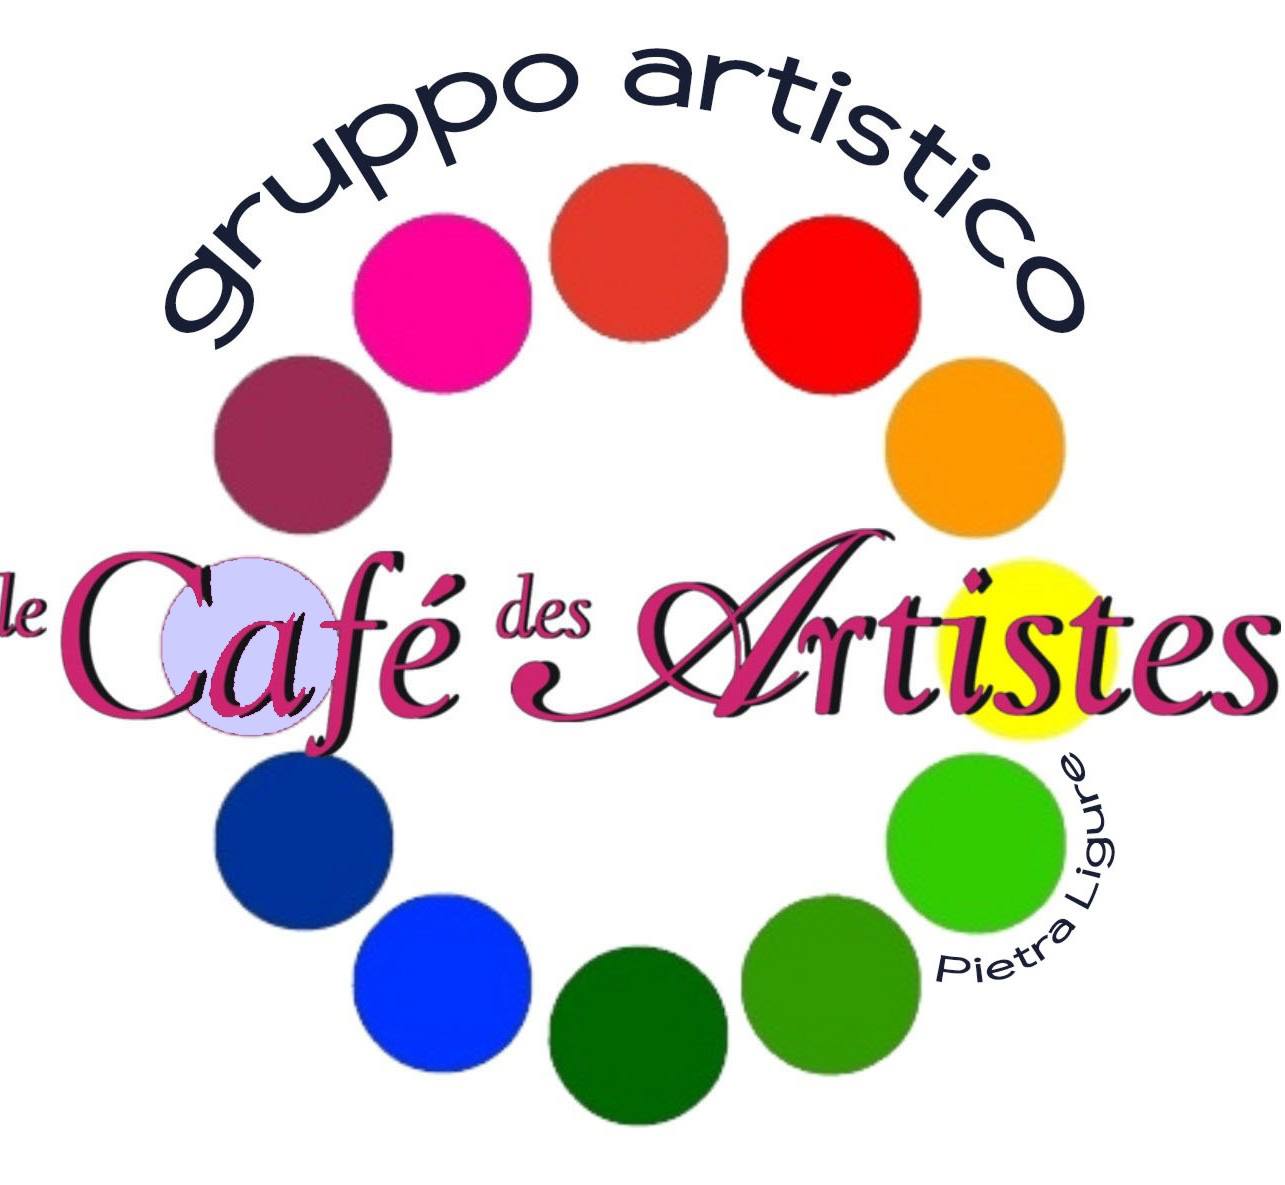 Gruppo Artistico Le cafe des artistes